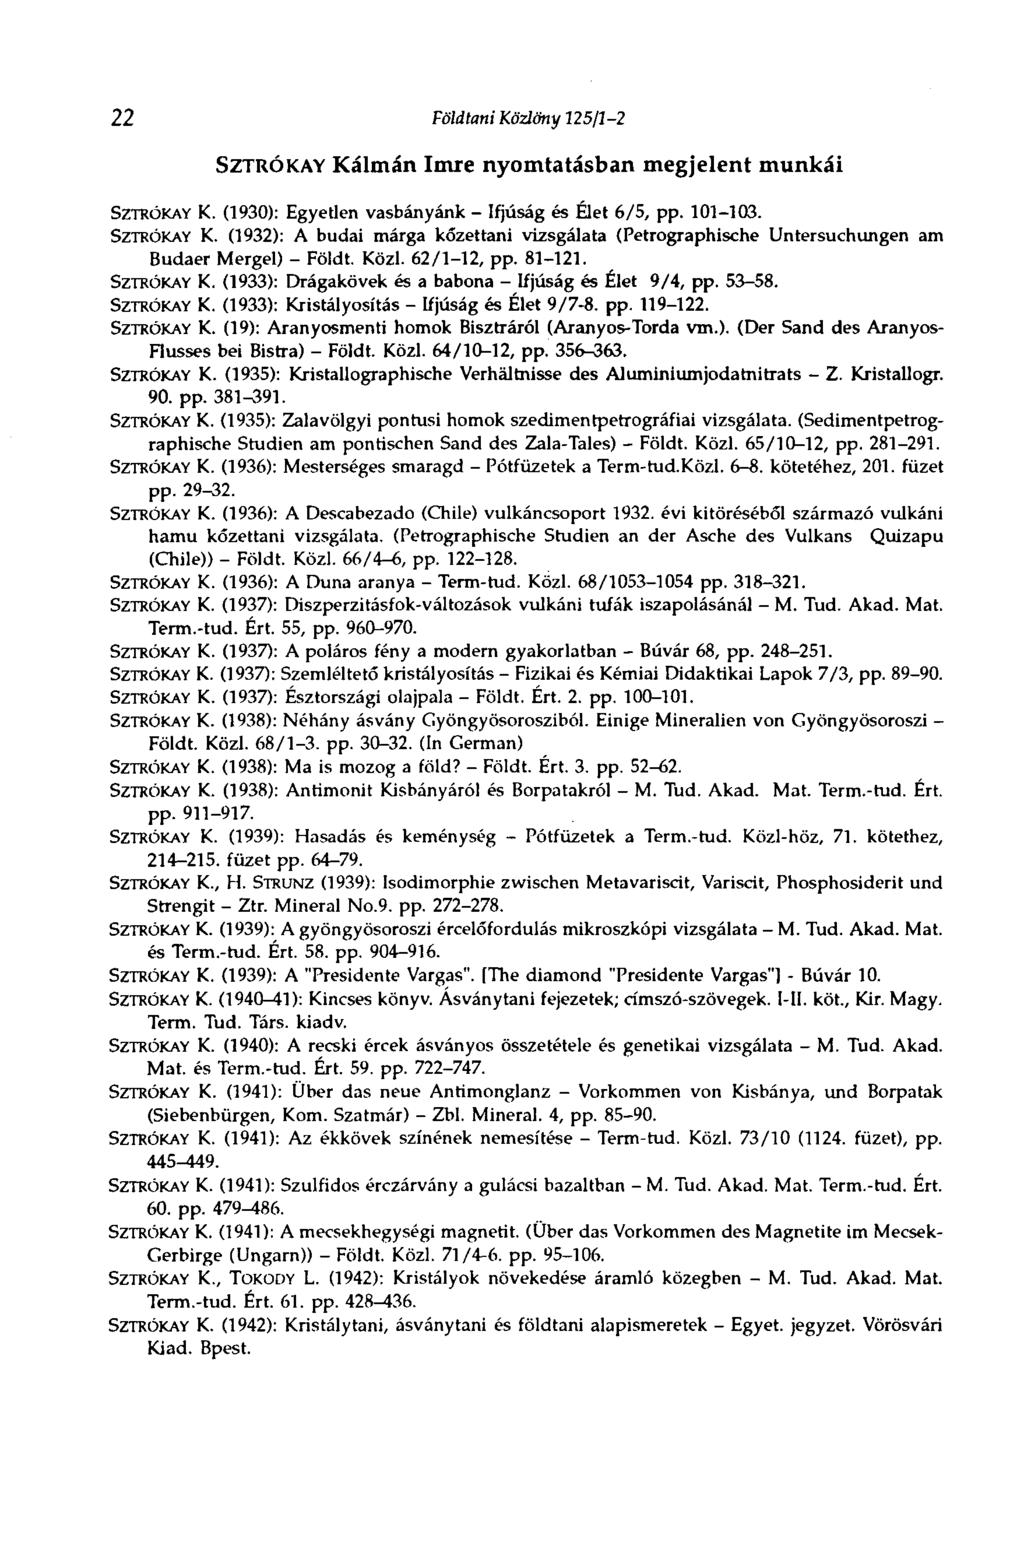 22 Földtani Közlöny 125/1-2 SZTRÓKAY Kálmán Imre nyomtatásban megjelent munkái SZTRÓKAY K. (1930): Egyetlen vasbányánk - Ifjúság és Élet 6/5, pp. 101-103. SZTRÓKAY K. (1932): A budai márga kőzettani vizsgálata (Petrographische Untersuchungen am Budaer Mergel) - Földt.